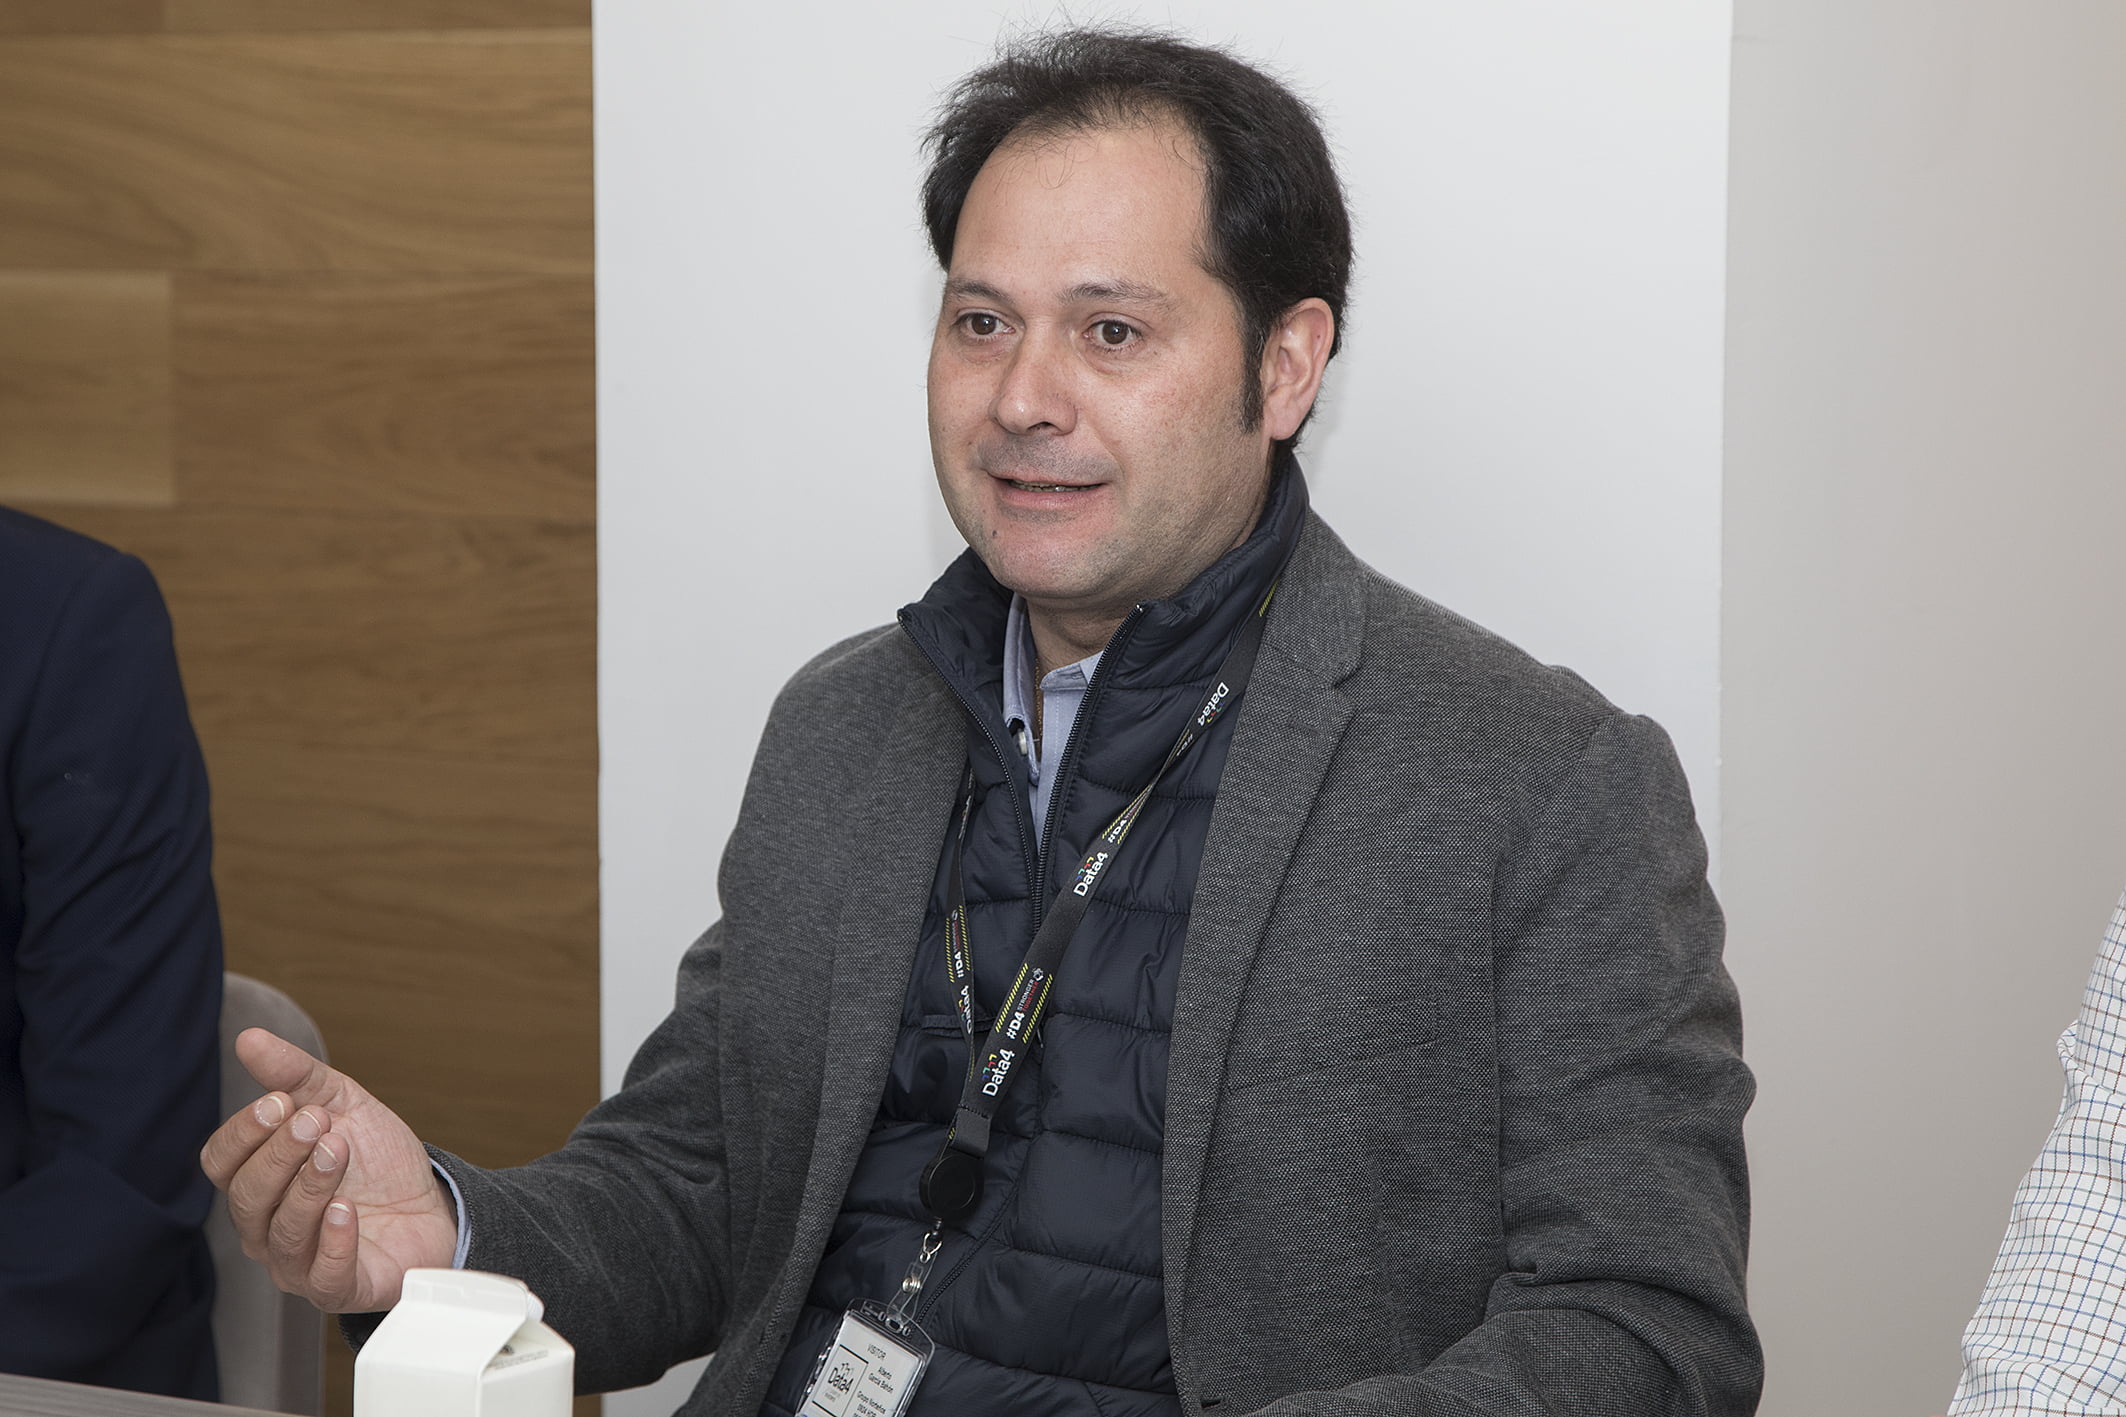 Alberto García, director of systems of Central de Carnes Grupo Norteños